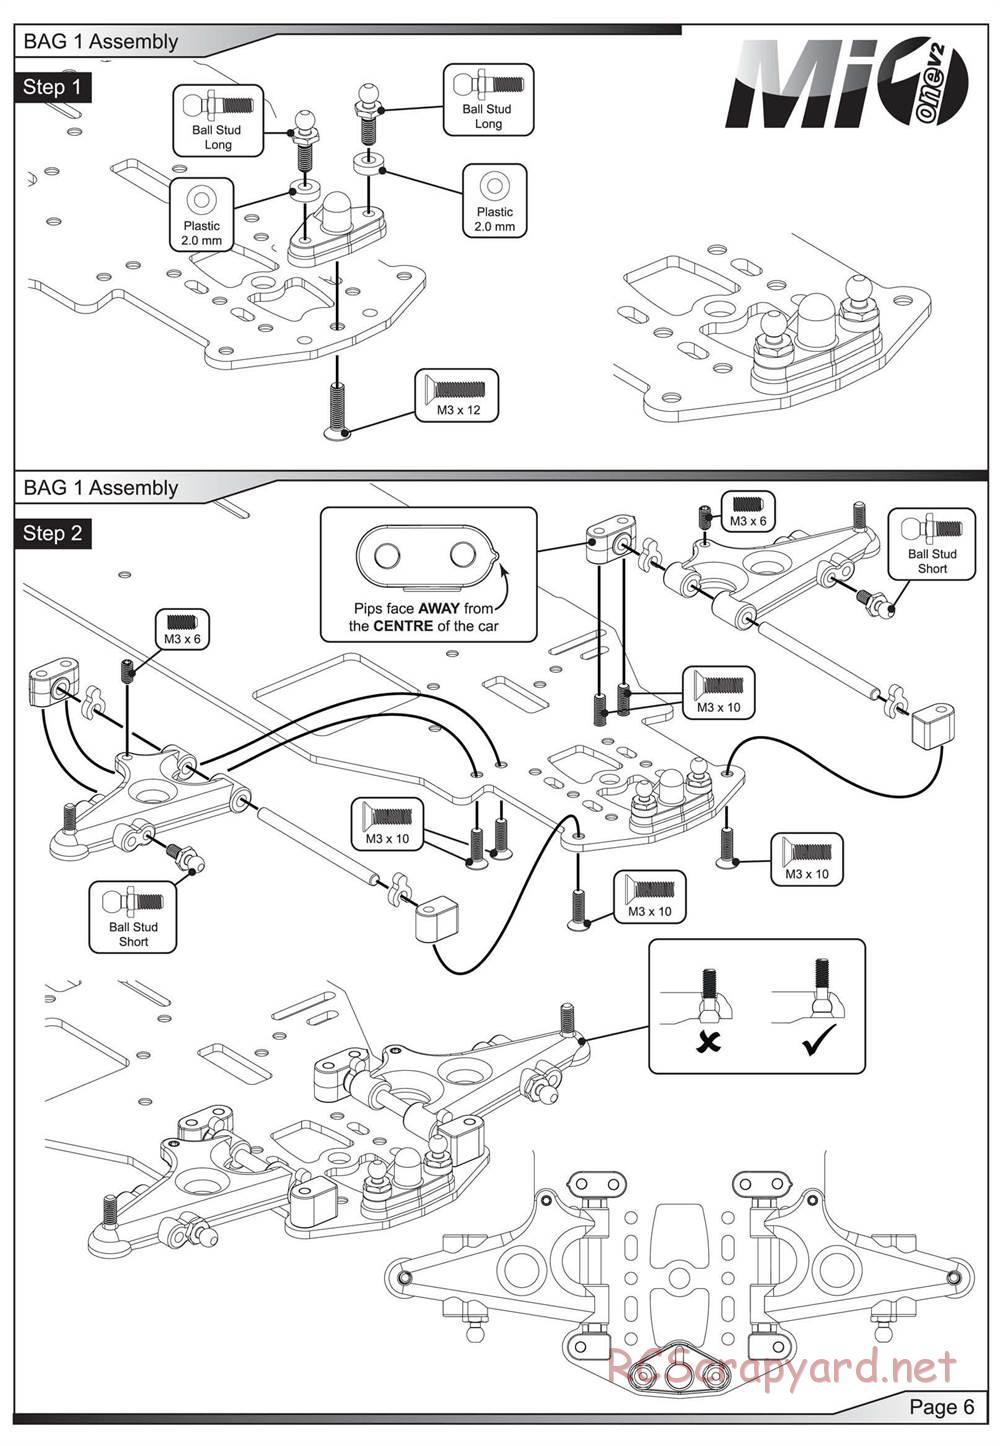 Schumacher - Mi1v2 - Manual - Page 7